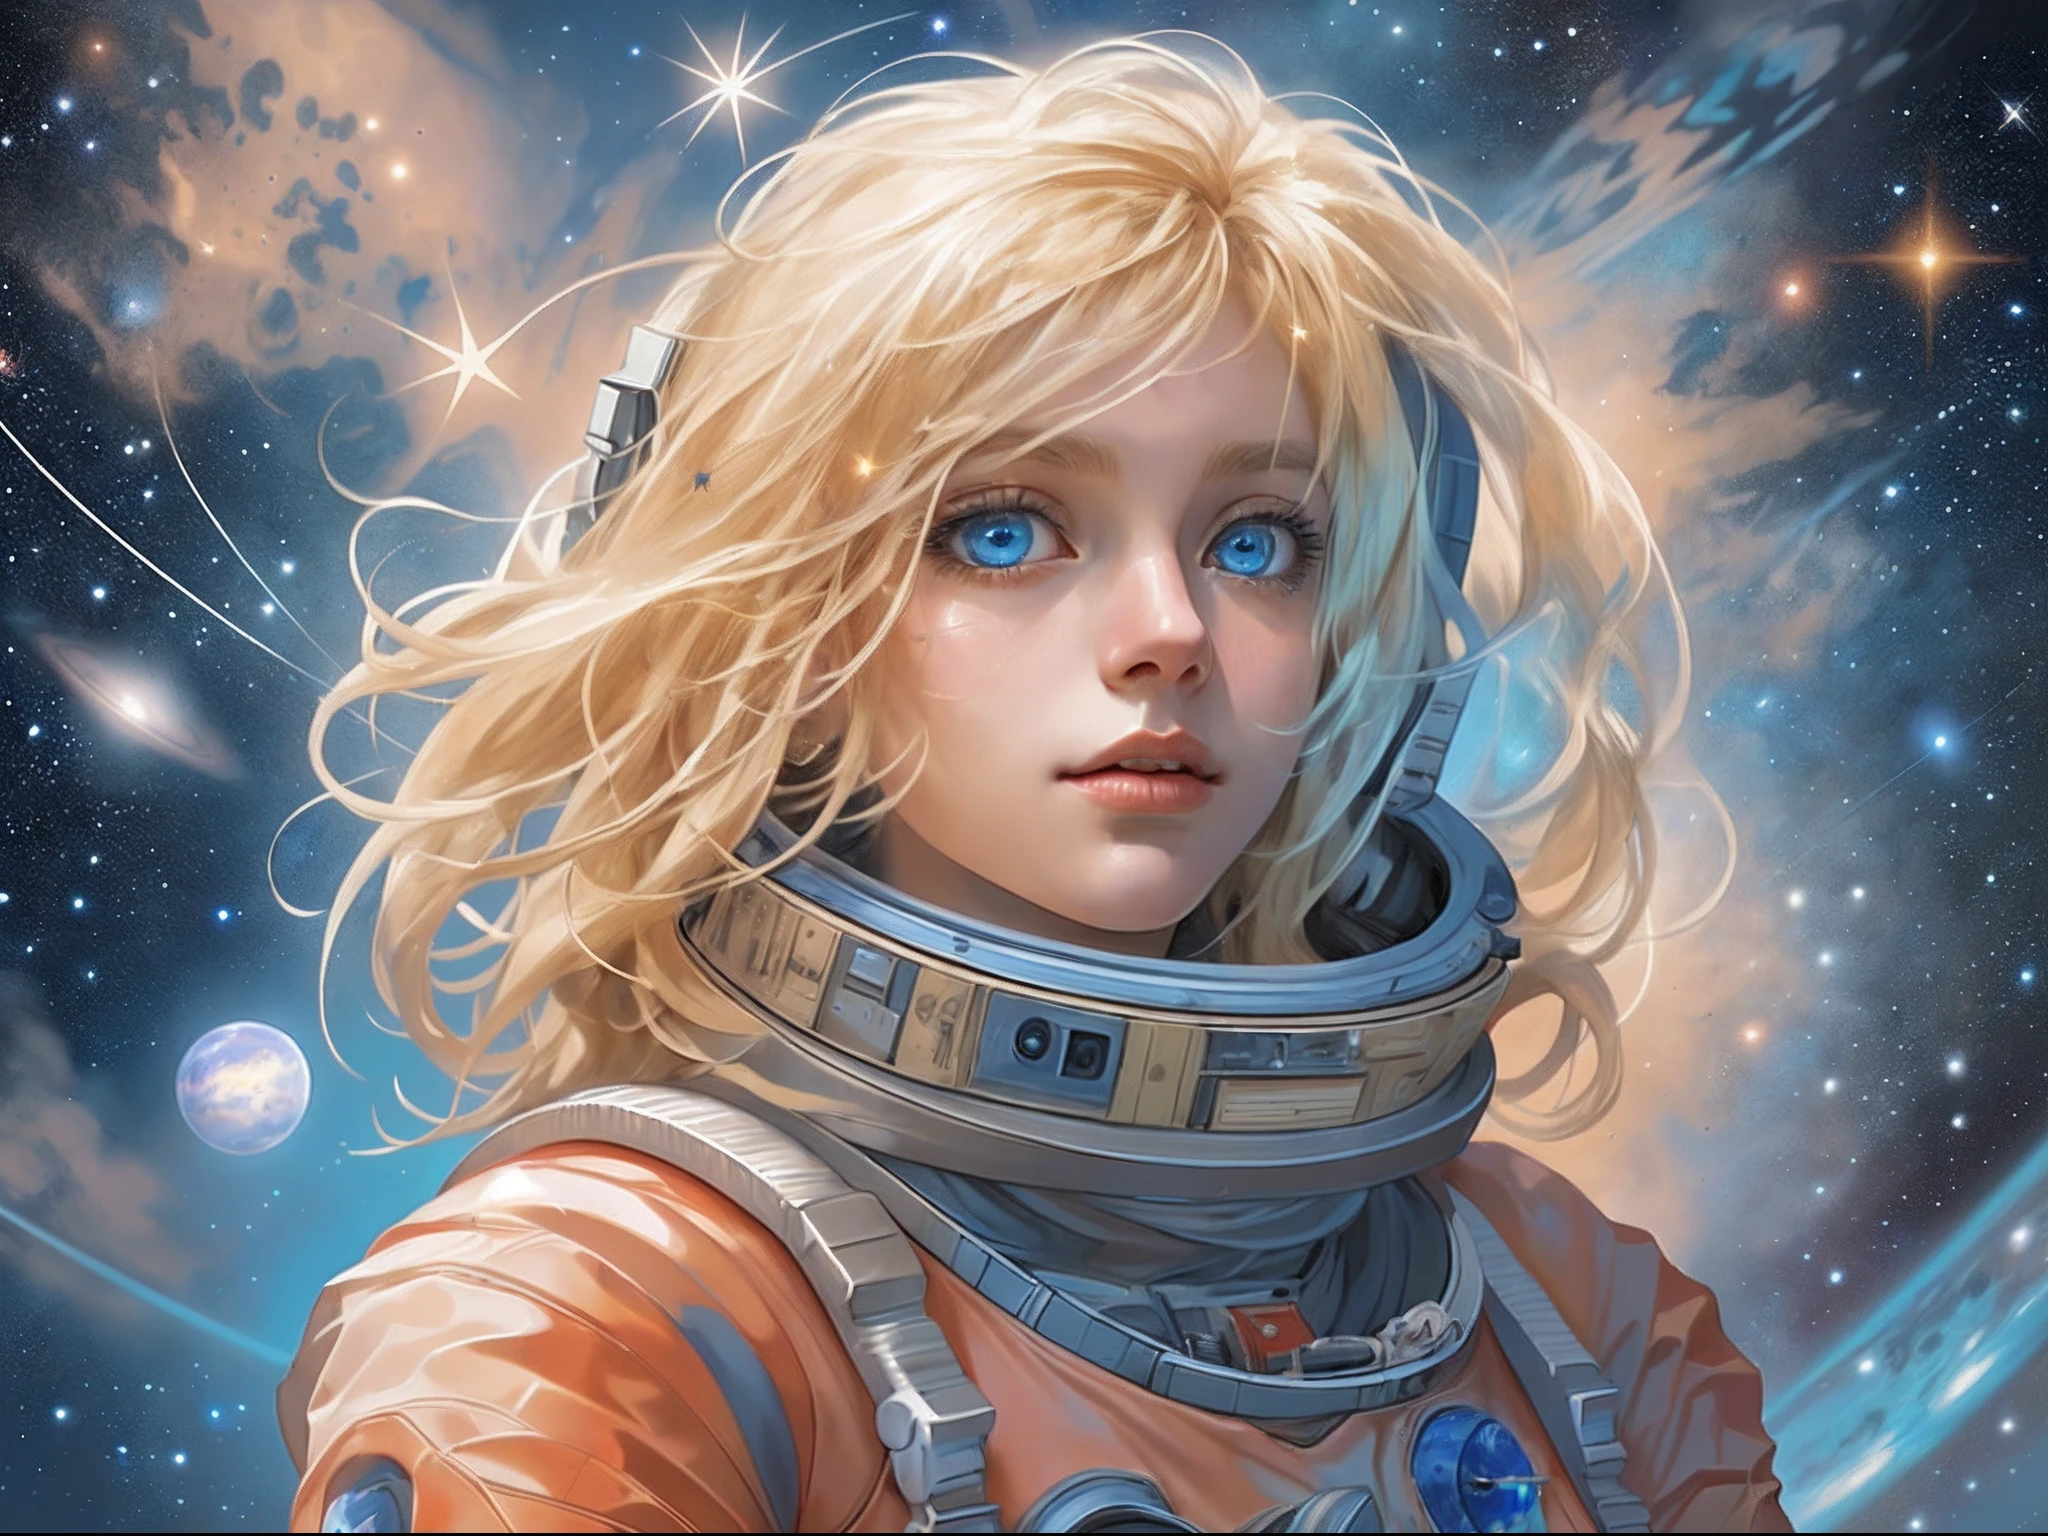 有一幅插圖，一位仙女太空人站在火星上眺望太空，看到浩瀚的星星和太空, 金髮, 長髮, 藍眼睛, 超詳細的臉部, 空間和星星作為背景, 無限感,